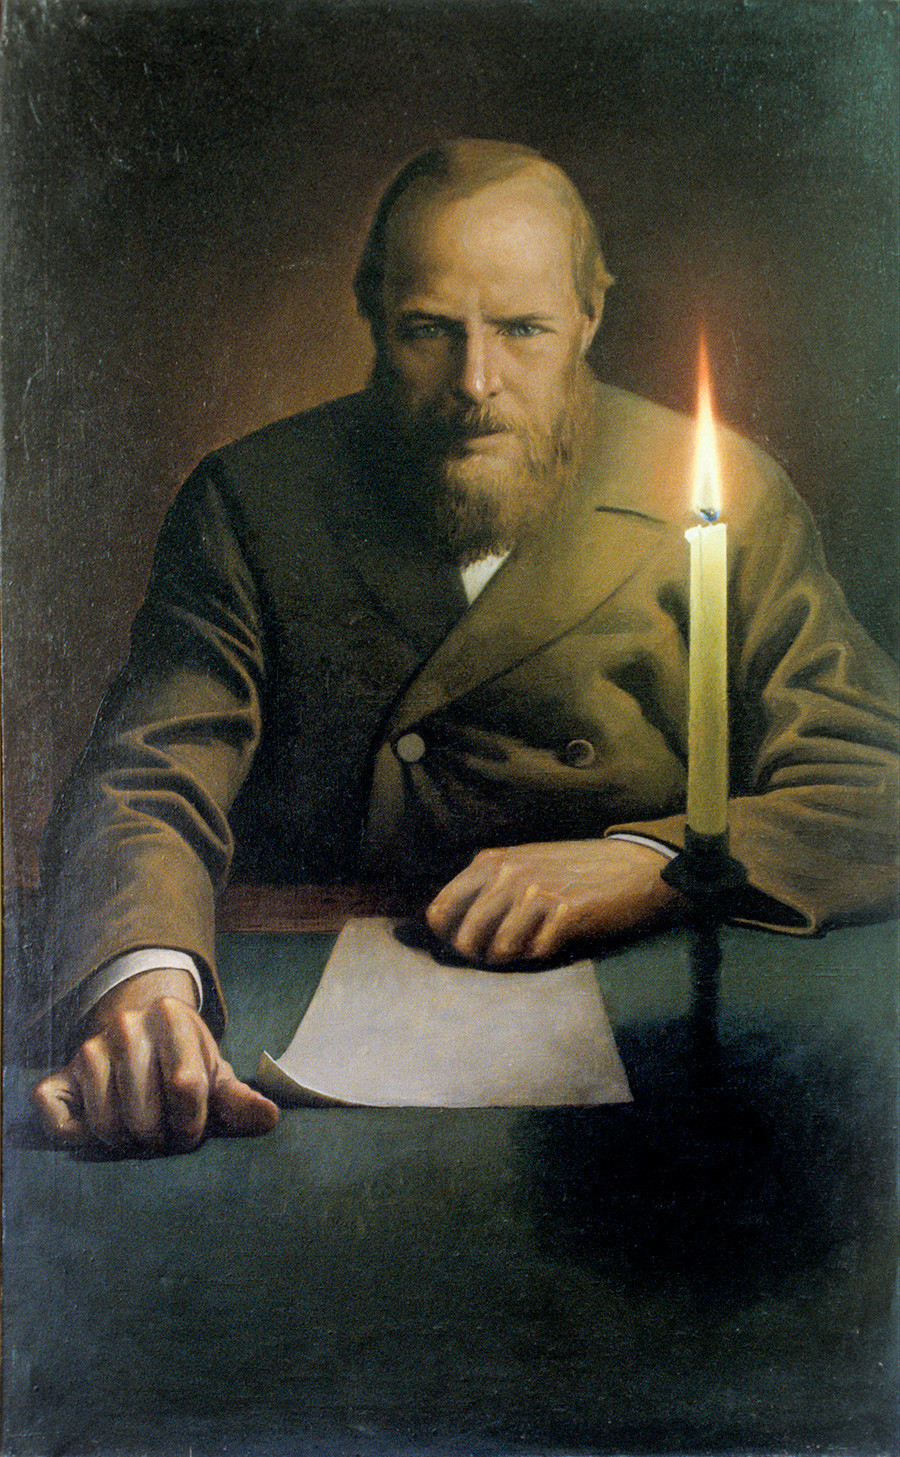 Retrato de Fiódor Dostoiévski por Konstantin Vassíliev.